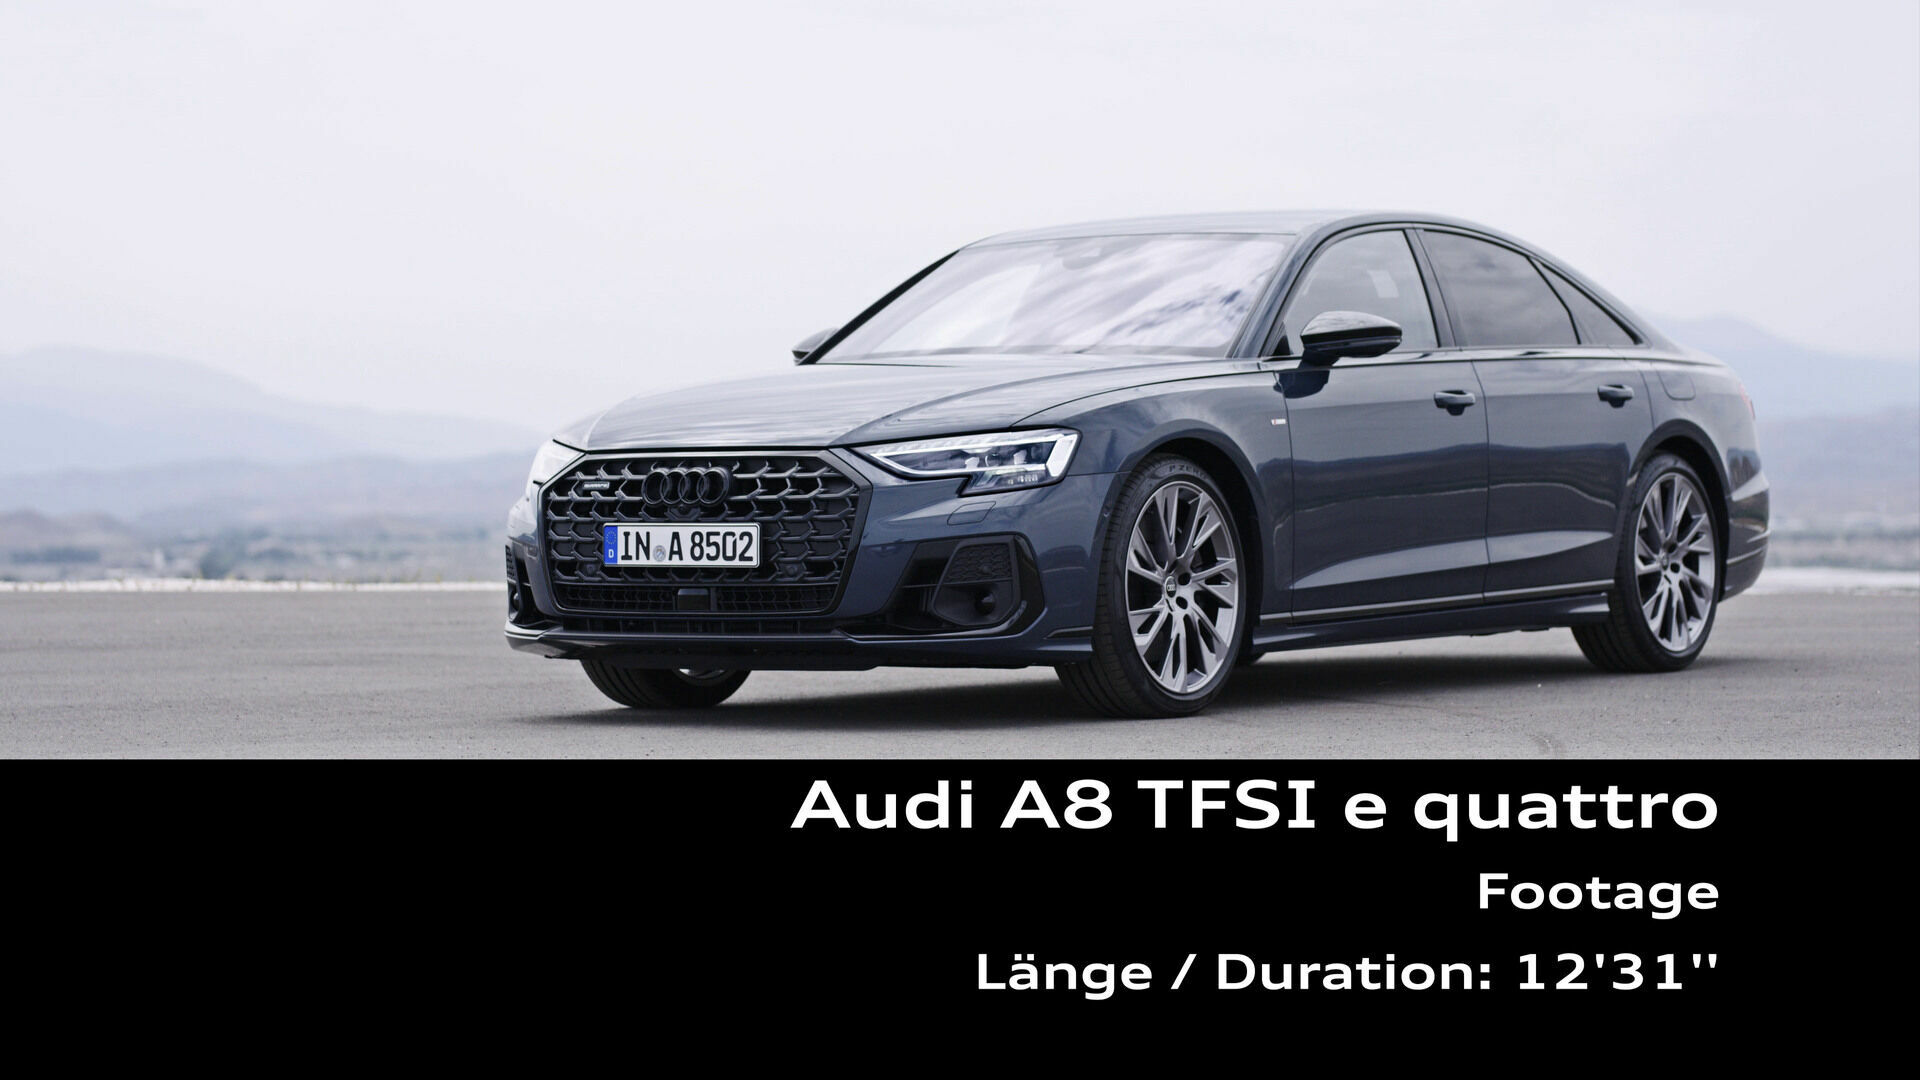 Footage: Audi A8 60 TFSI e quattro (in Spain)